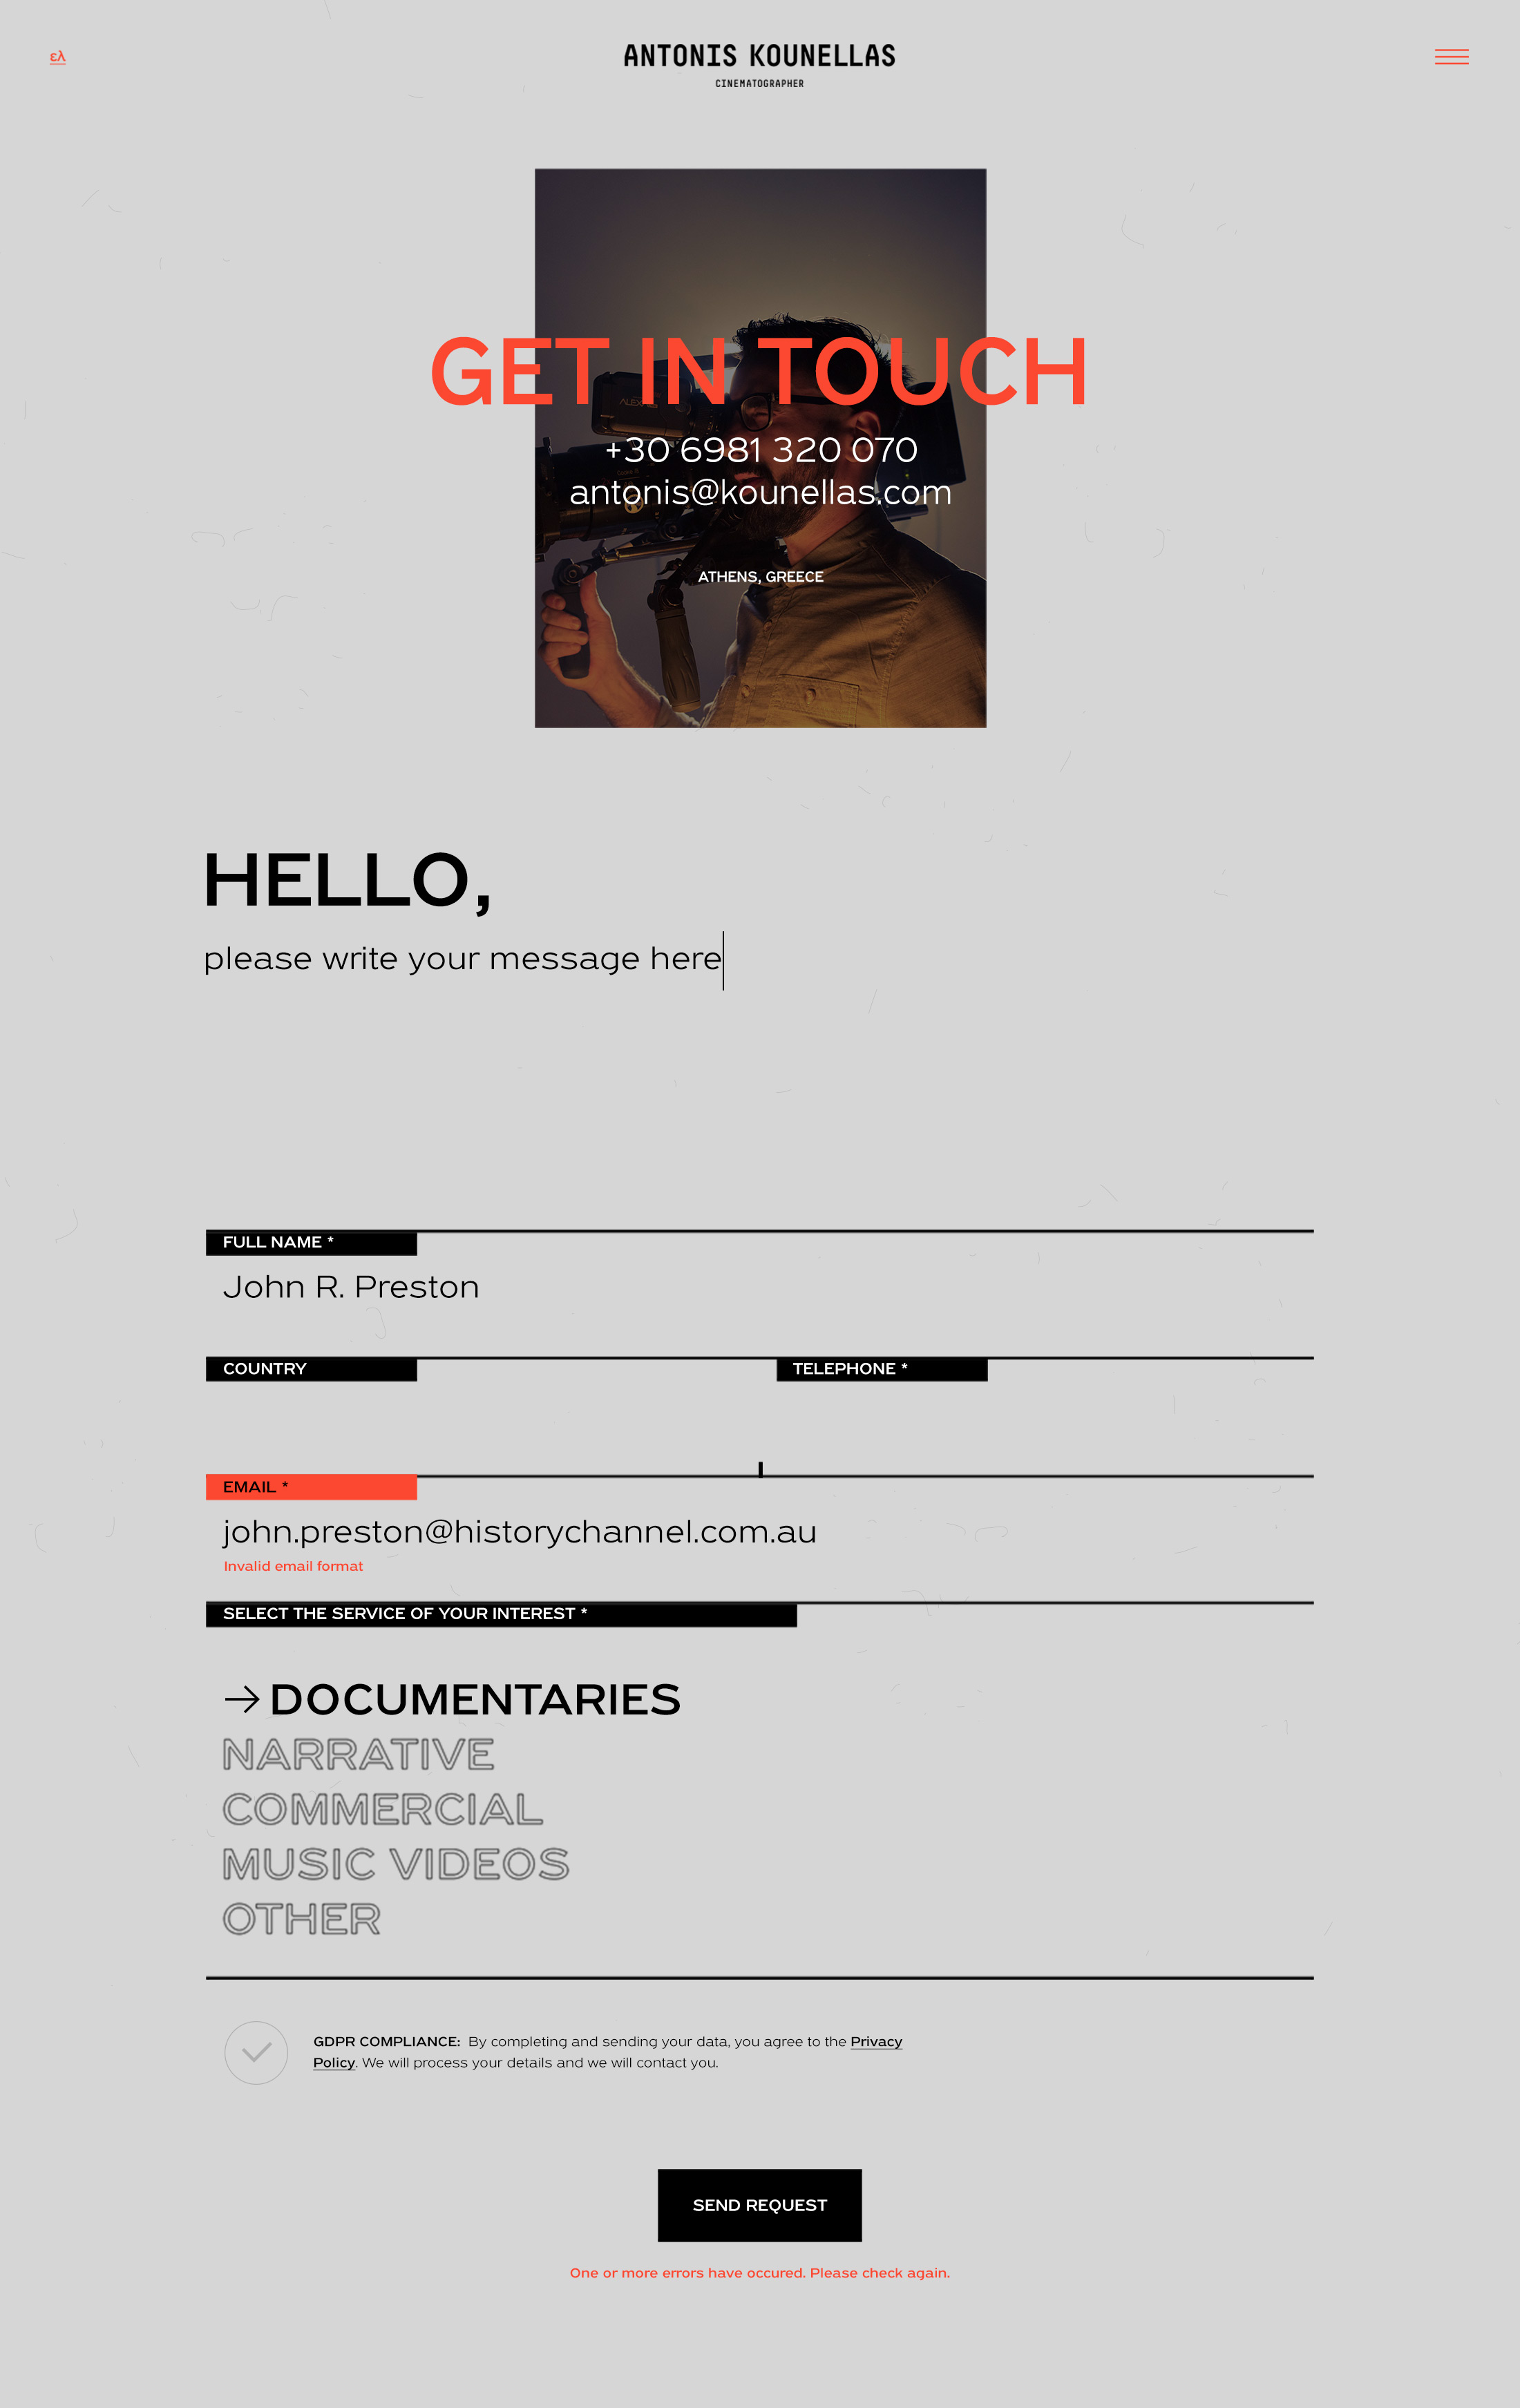 kounellas website design contact kommigraphics